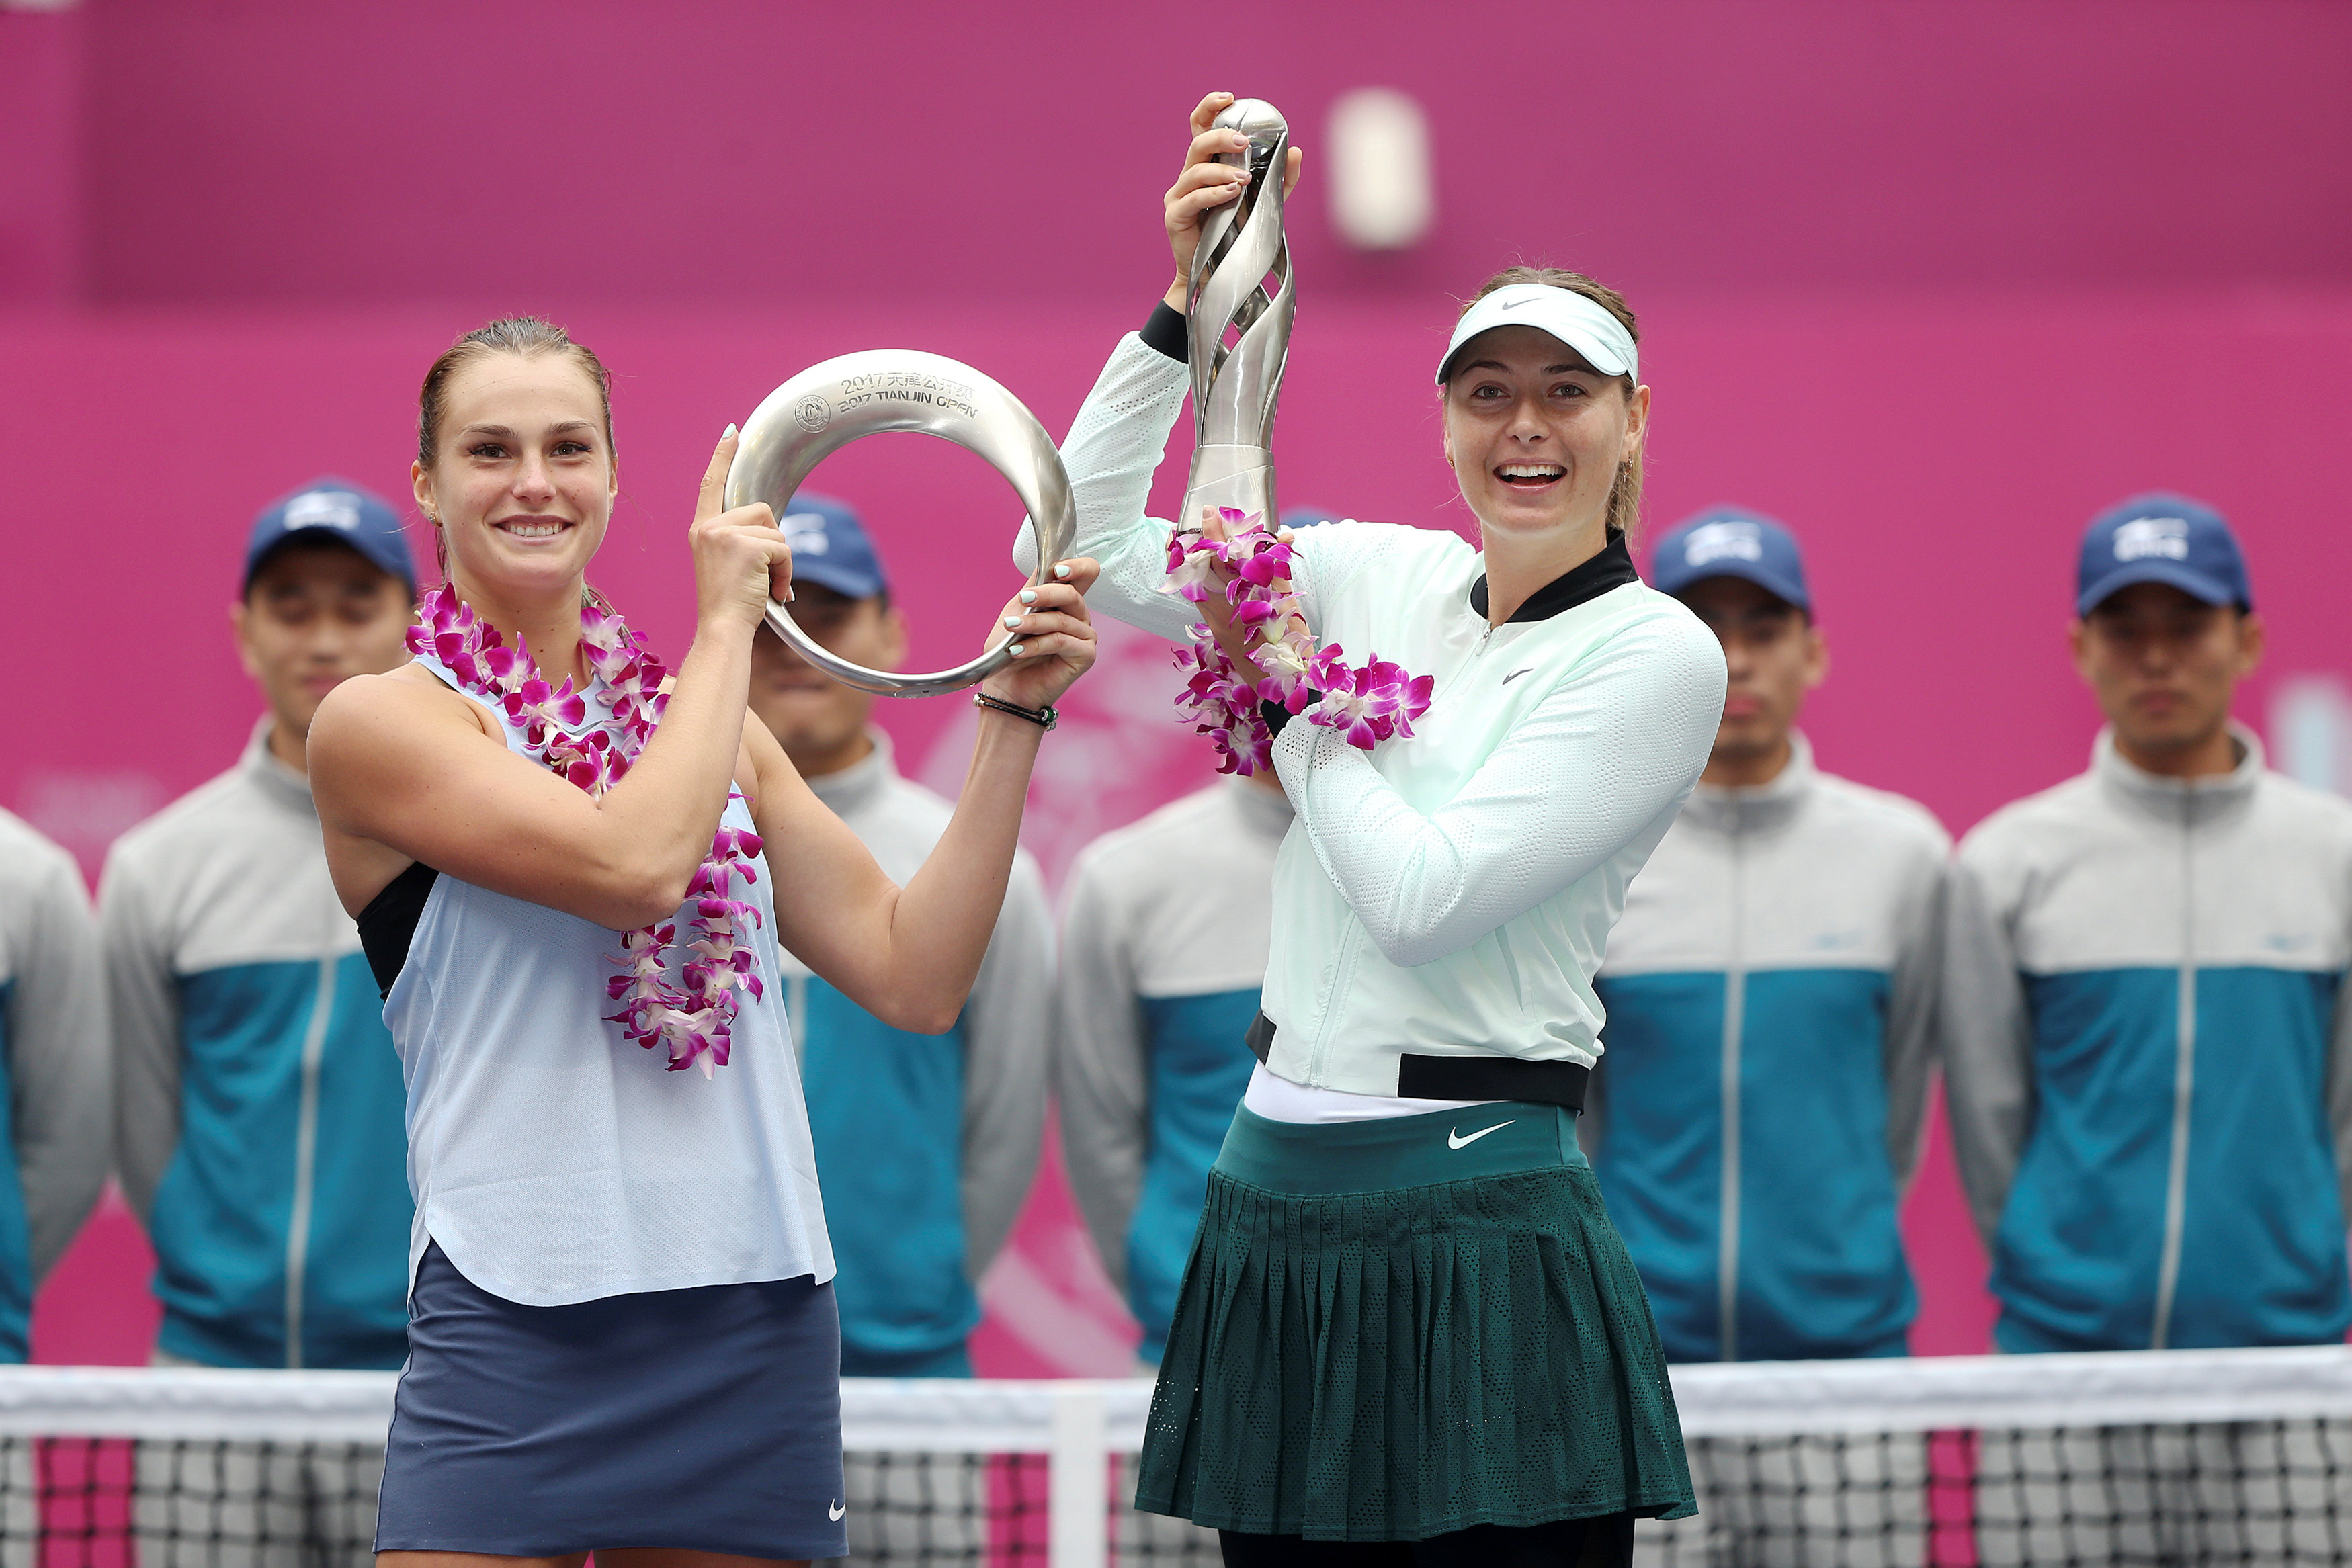 Tennis: Sharapova downs Sabalenka to win first WTA title since return from ban